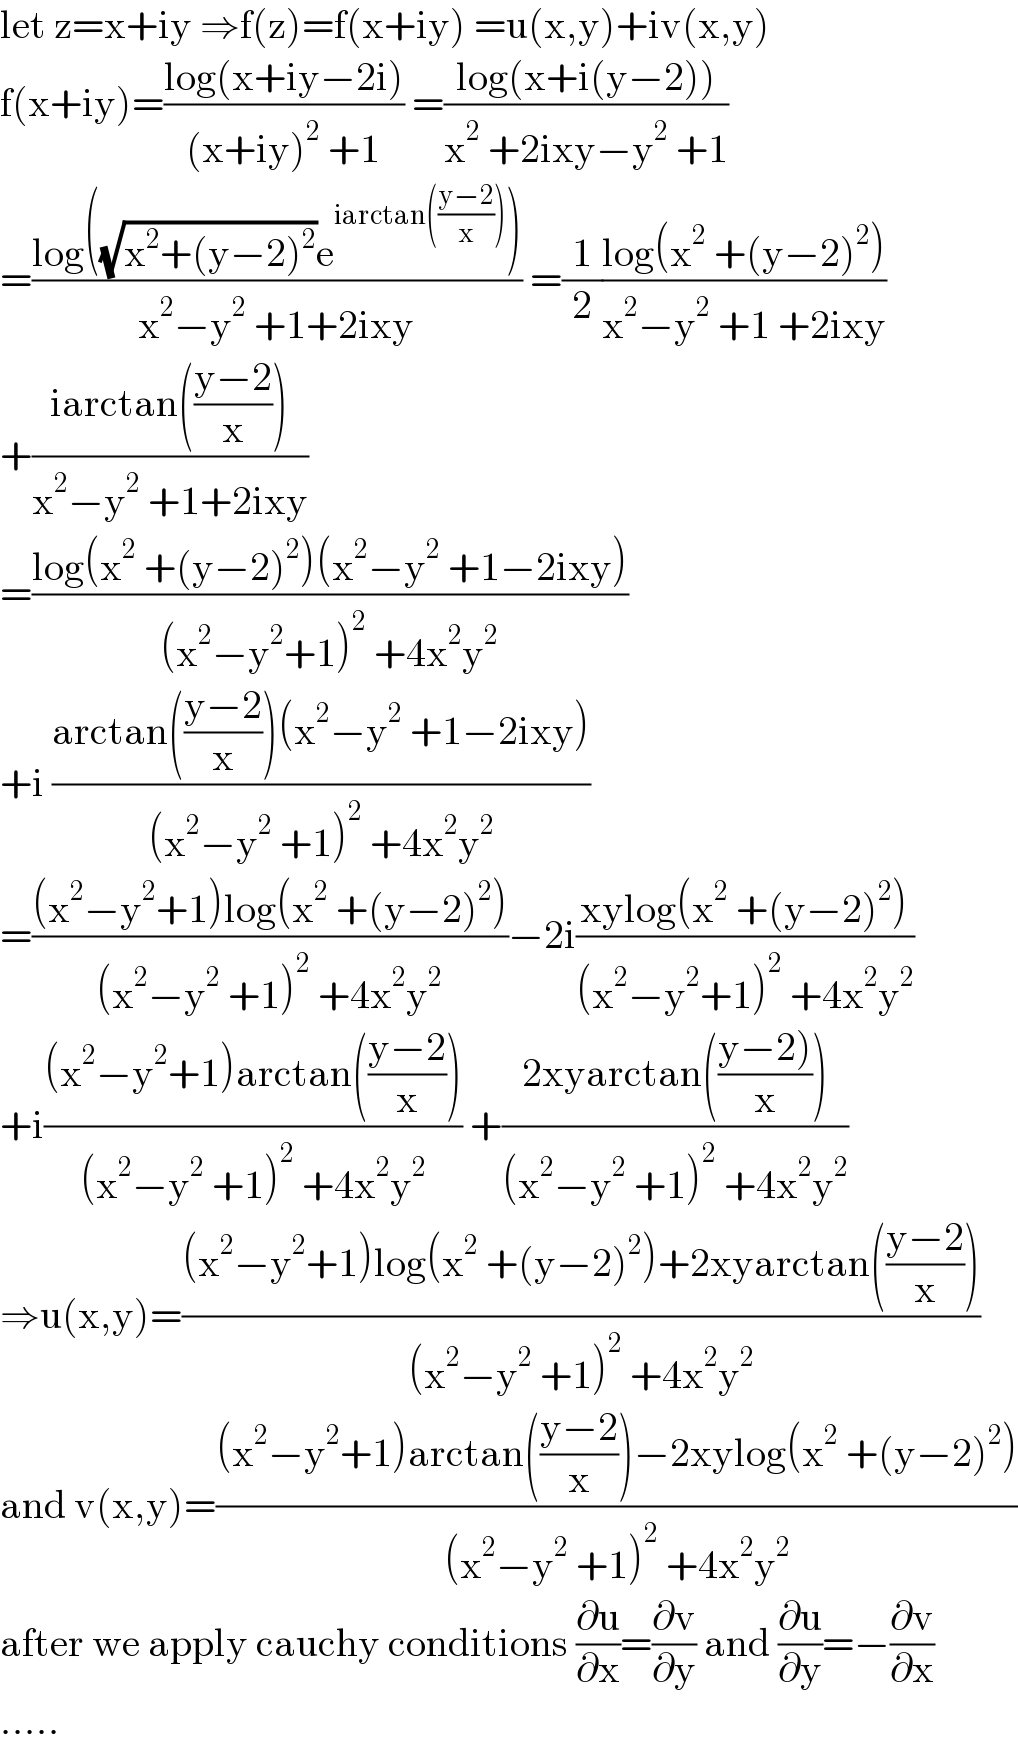 let z=x+iy ⇒f(z)=f(x+iy) =u(x,y)+iv(x,y)  f(x+iy)=((log(x+iy−2i))/((x+iy)^2  +1)) =((log(x+i(y−2)))/(x^2  +2ixy−y^2  +1))  =((log((√(x^2 +(y−2)^2 ))e^(iarctan(((y−2)/x))) ))/(x^2 −y^2  +1+2ixy)) =(1/2)((log(x^2  +(y−2)^2 ))/(x^2 −y^2  +1 +2ixy))  +((iarctan(((y−2)/x)))/(x^2 −y^2  +1+2ixy))  =((log(x^2  +(y−2)^2 )(x^2 −y^2  +1−2ixy))/((x^2 −y^2 +1)^2  +4x^2 y^2 ))  +i ((arctan(((y−2)/x))(x^2 −y^2  +1−2ixy))/((x^2 −y^2  +1)^2  +4x^2 y^2 ))  =(((x^2 −y^2 +1)log(x^2  +(y−2)^2 ))/((x^2 −y^2  +1)^2  +4x^2 y^2 ))−2i((xylog(x^2  +(y−2)^2 ))/((x^2 −y^2 +1)^2  +4x^2 y^2 ))  +i(((x^2 −y^2 +1)arctan(((y−2)/x)))/((x^2 −y^2  +1)^2  +4x^2 y^2 )) +((2xyarctan(((y−2))/x)))/((x^2 −y^2  +1)^2  +4x^2 y^2 ))  ⇒u(x,y)=(((x^2 −y^2 +1)log(x^2  +(y−2)^2 )+2xyarctan(((y−2)/x)))/((x^2 −y^2  +1)^2  +4x^2 y^2 ))  and v(x,y)=(((x^2 −y^2 +1)arctan(((y−2)/x))−2xylog(x^2  +(y−2)^2 ))/((x^2 −y^2  +1)^2  +4x^2 y^2 ))  after we apply cauchy conditions (∂u/∂x)=(∂v/∂y) and (∂u/∂y)=−(∂v/∂x)  .....  